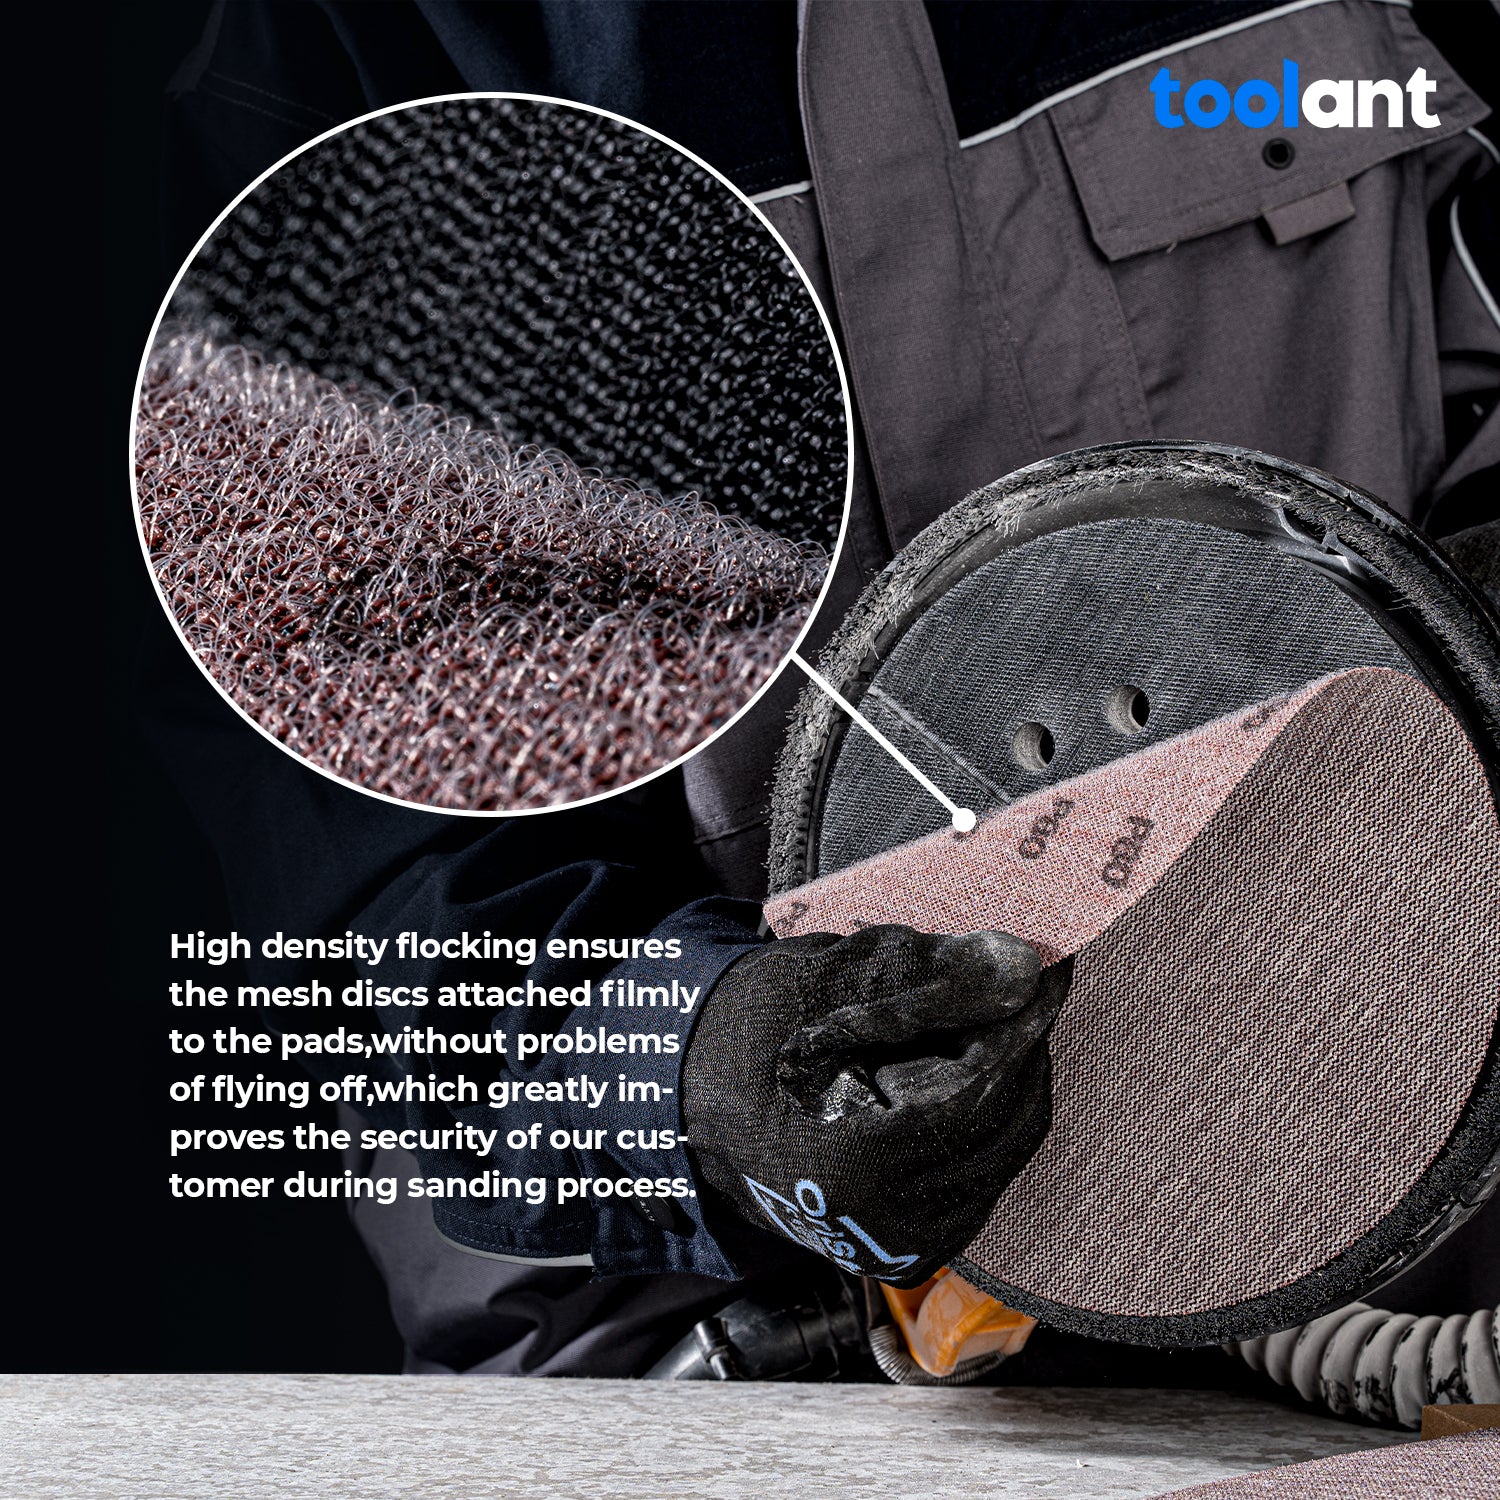 Mesh Abrasive 9 inch Dust-Free Hook and Loop Drywall Sanding Disc